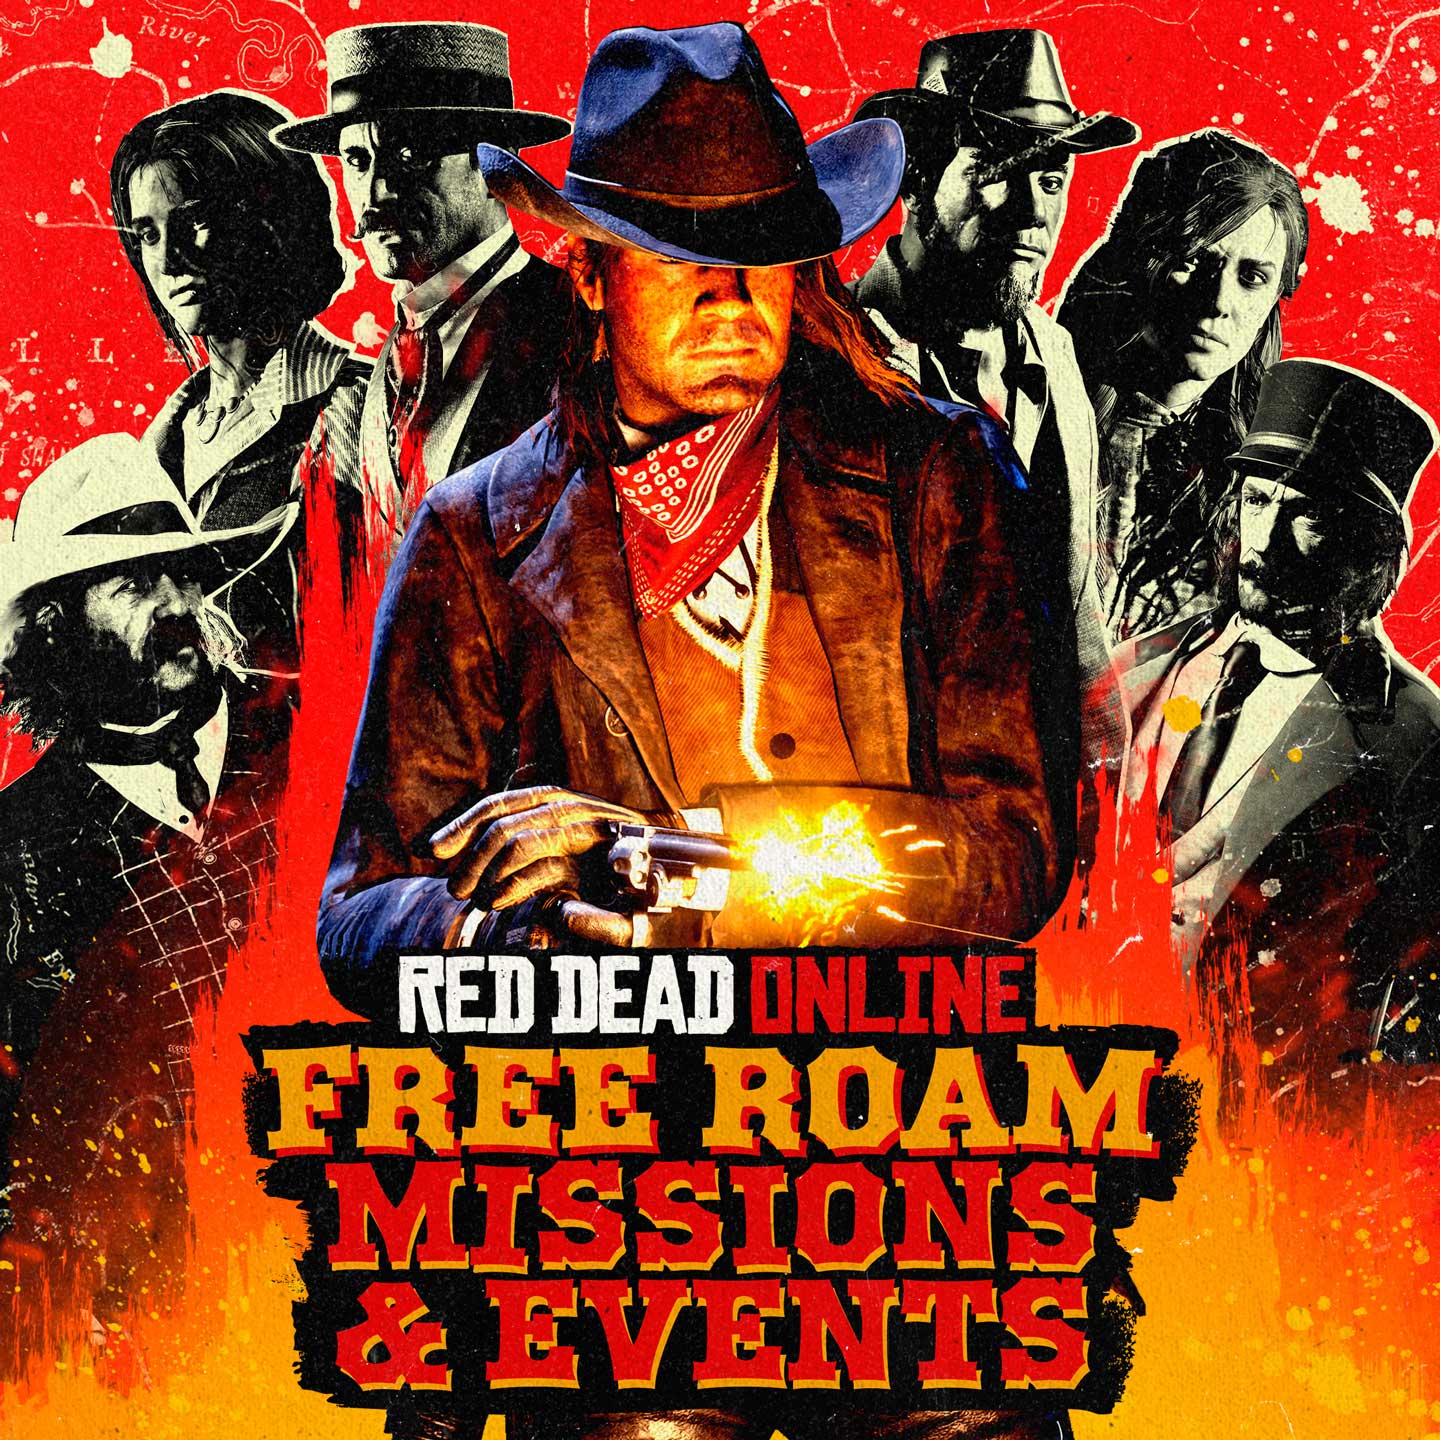 Unlock Free Roam in Red Dead Online